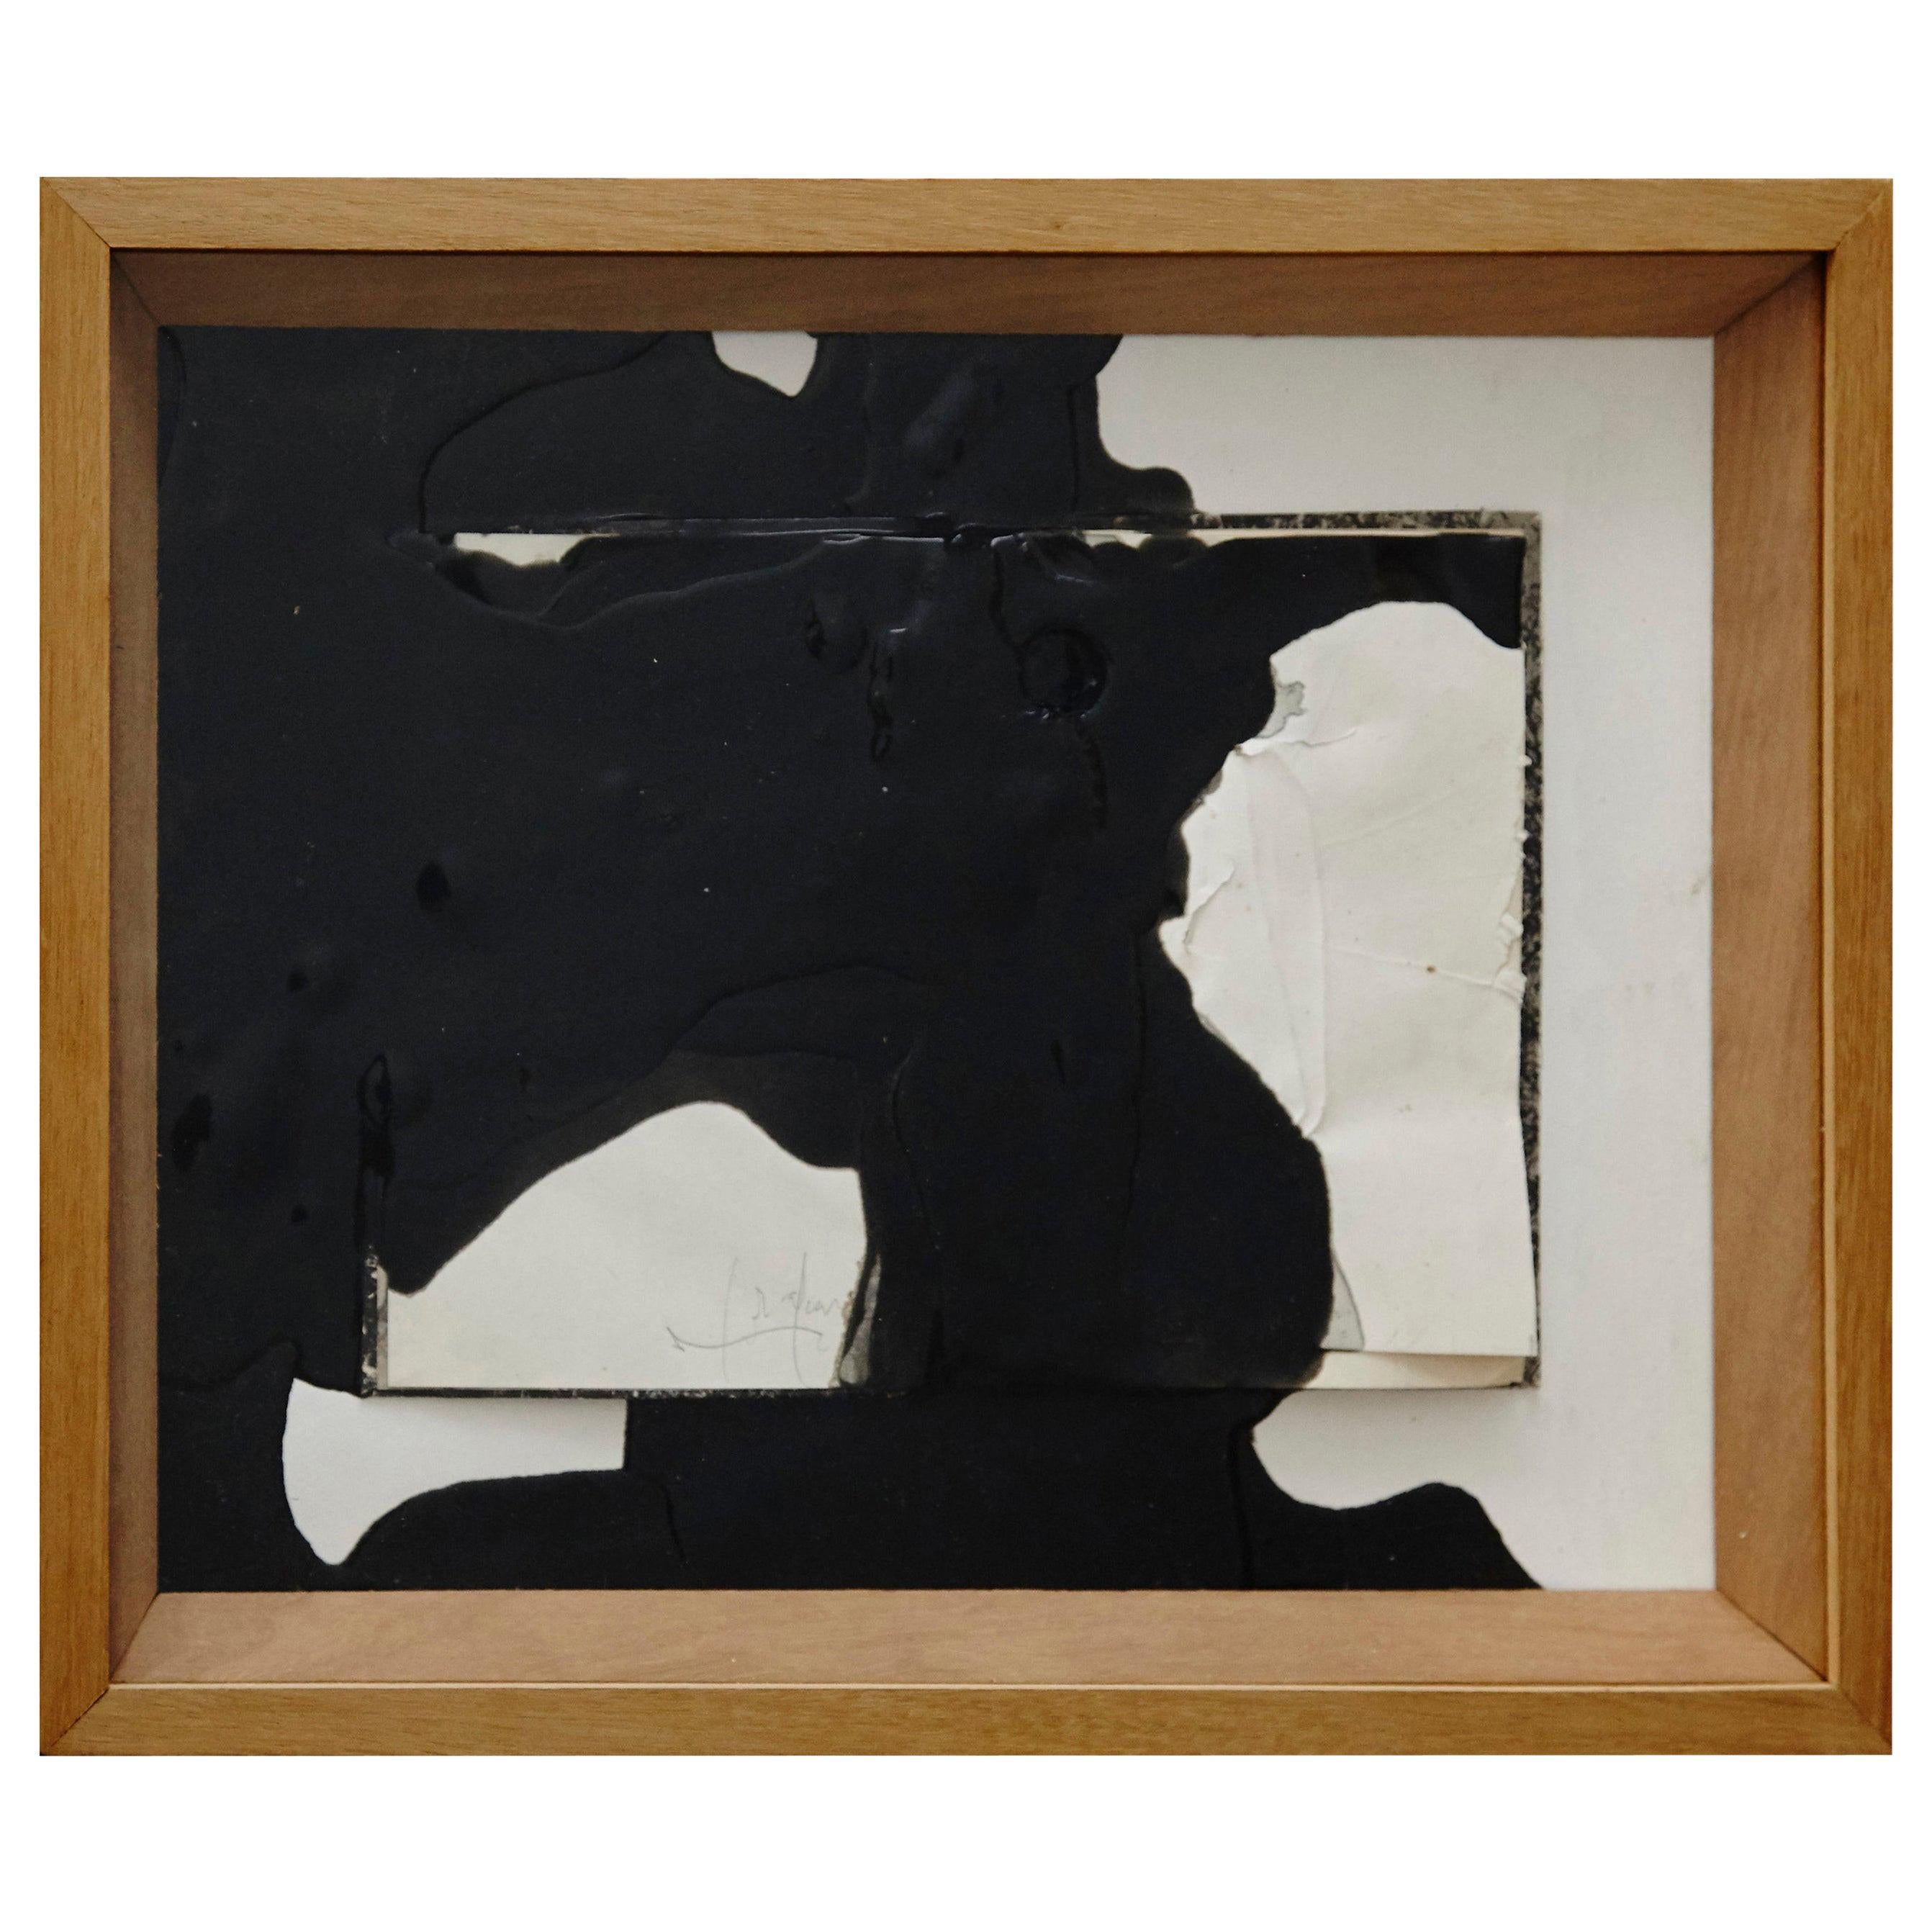 Jordi Alcaraz œuvre d'art abstraite sculpturale contemporaine, 2015.